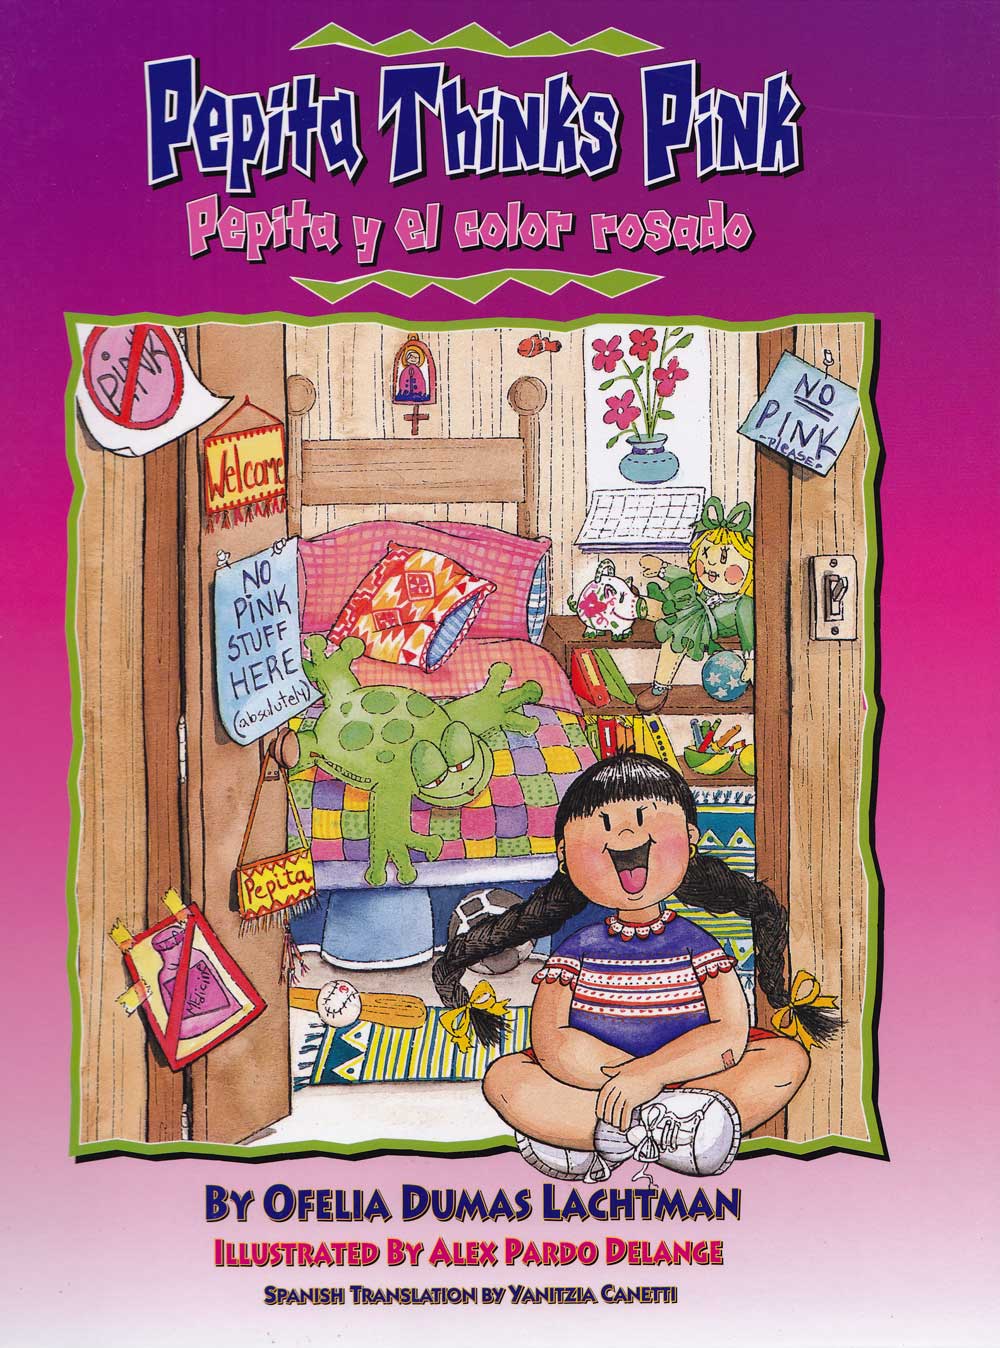 Pepita y el color rosado - Pepita Thinks Pink, Del Sol Books